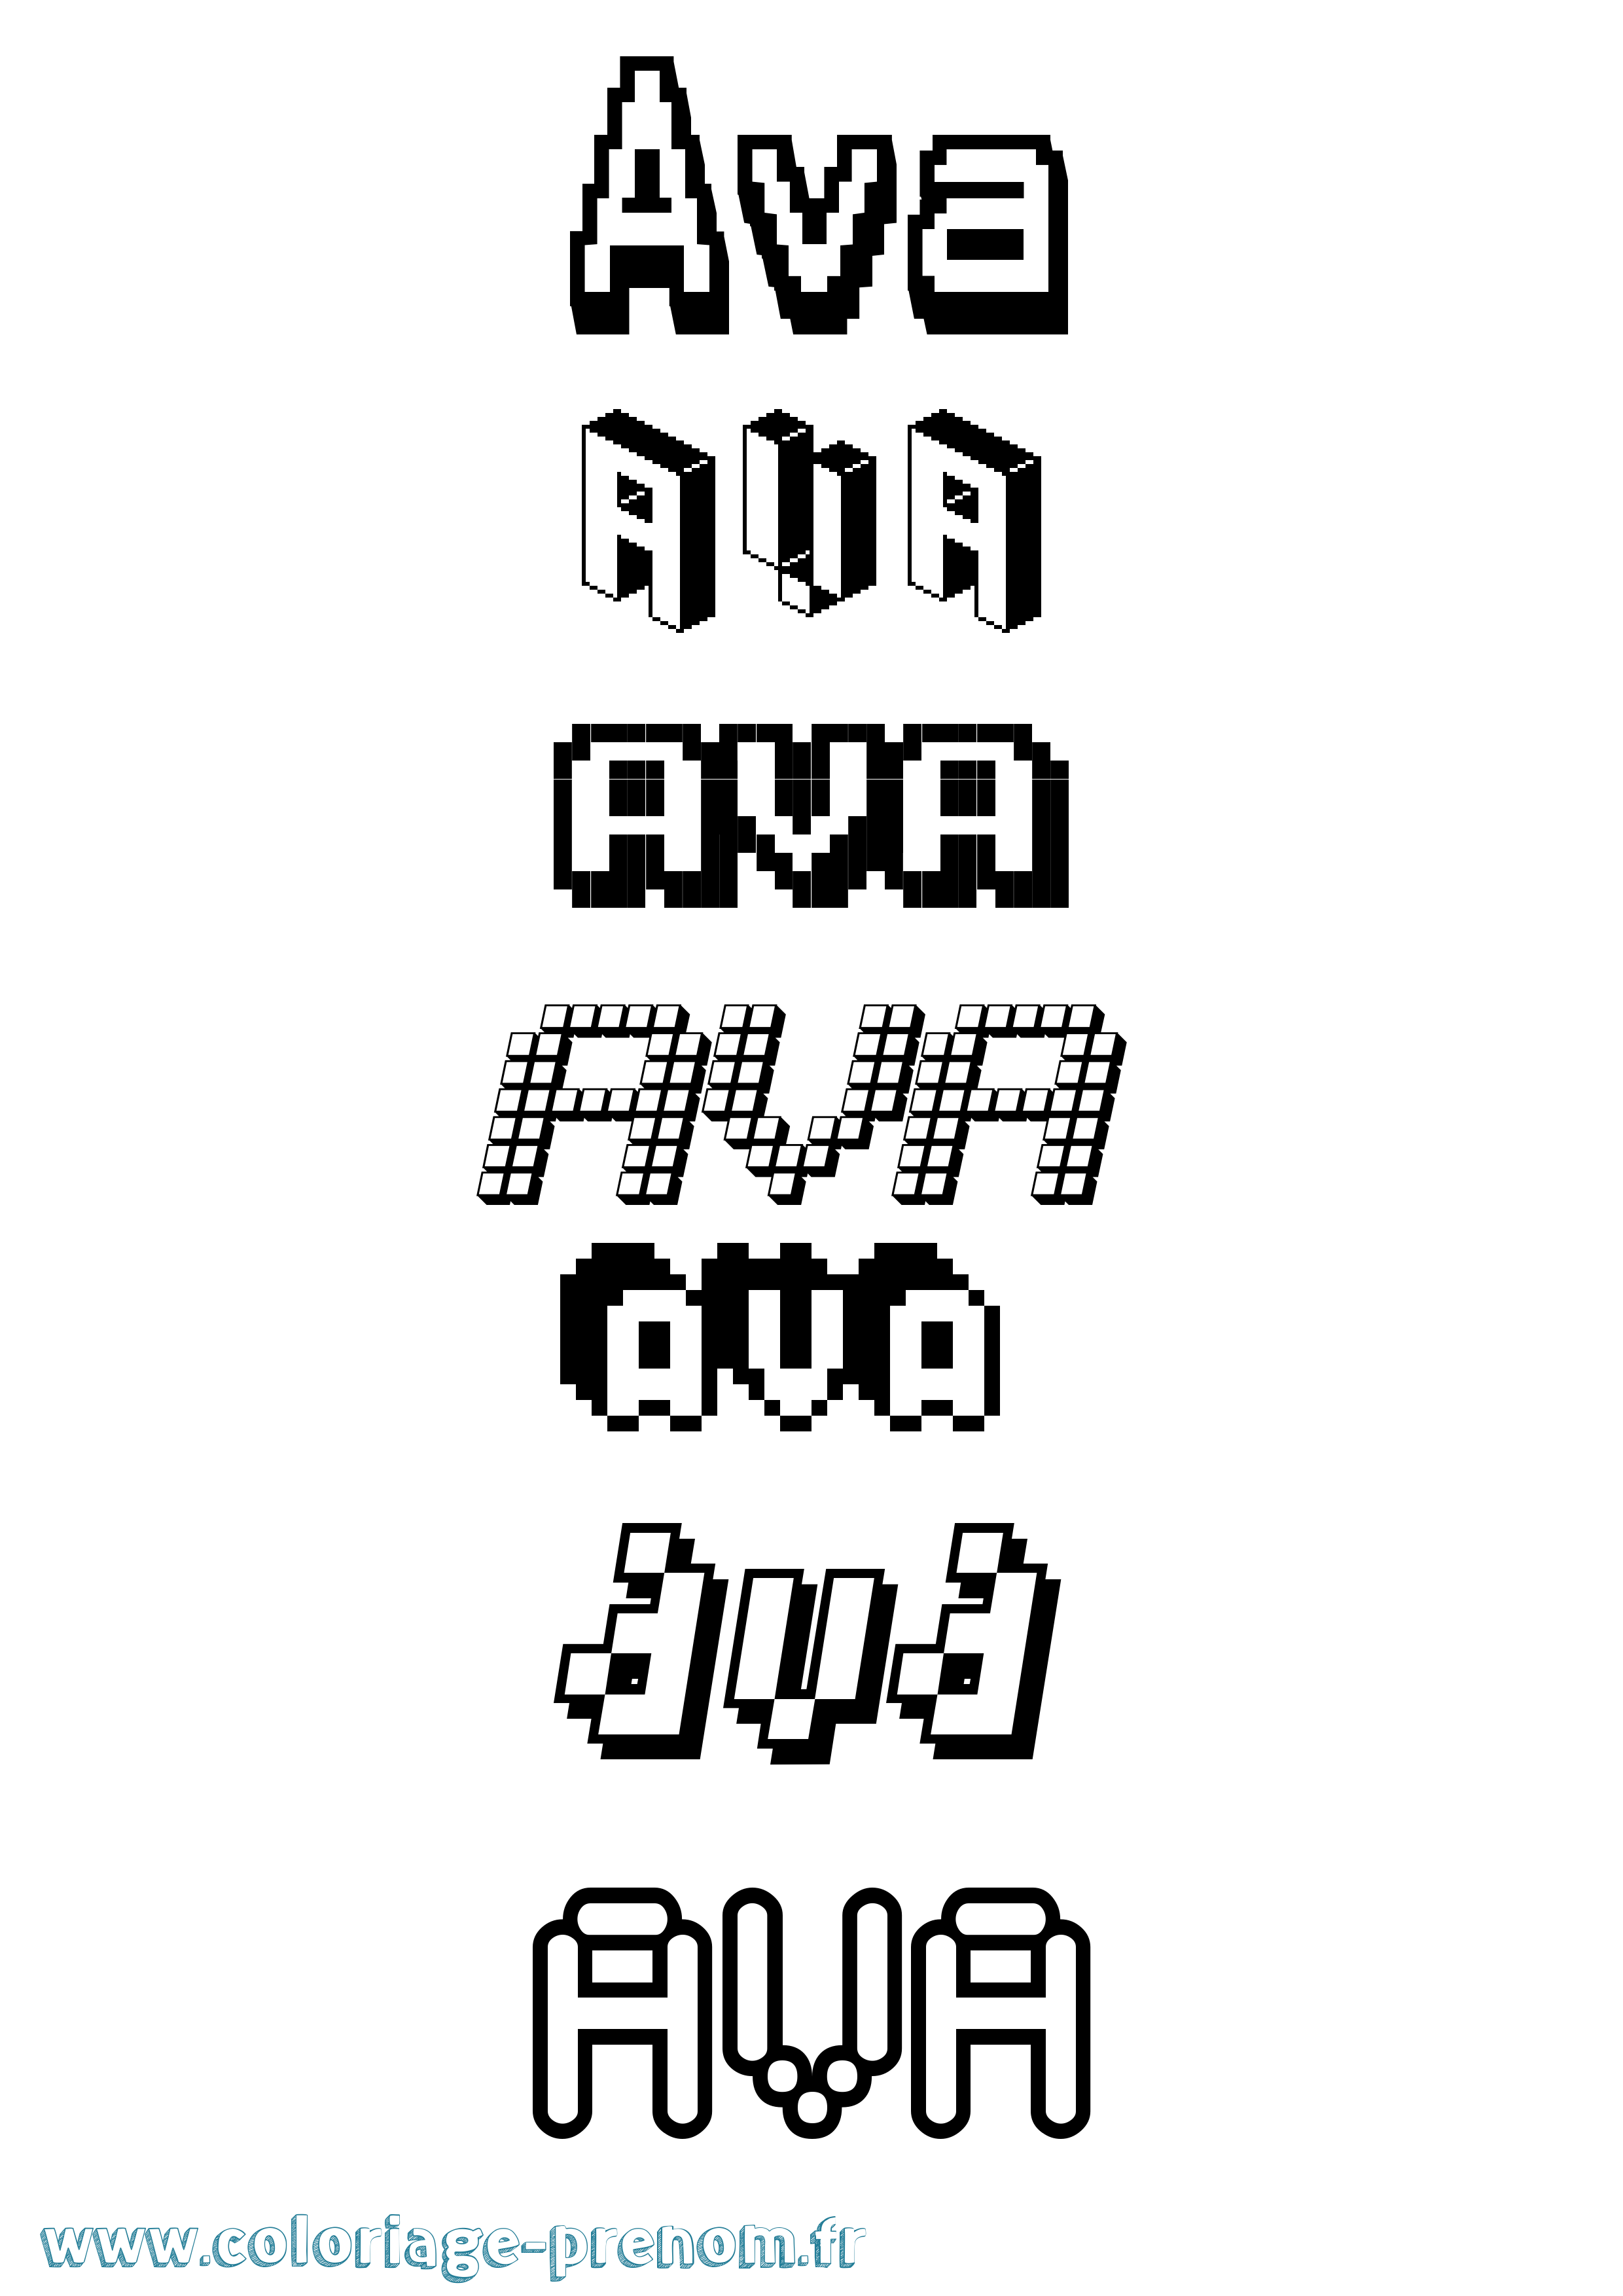 Coloriage prénom Ava Pixel